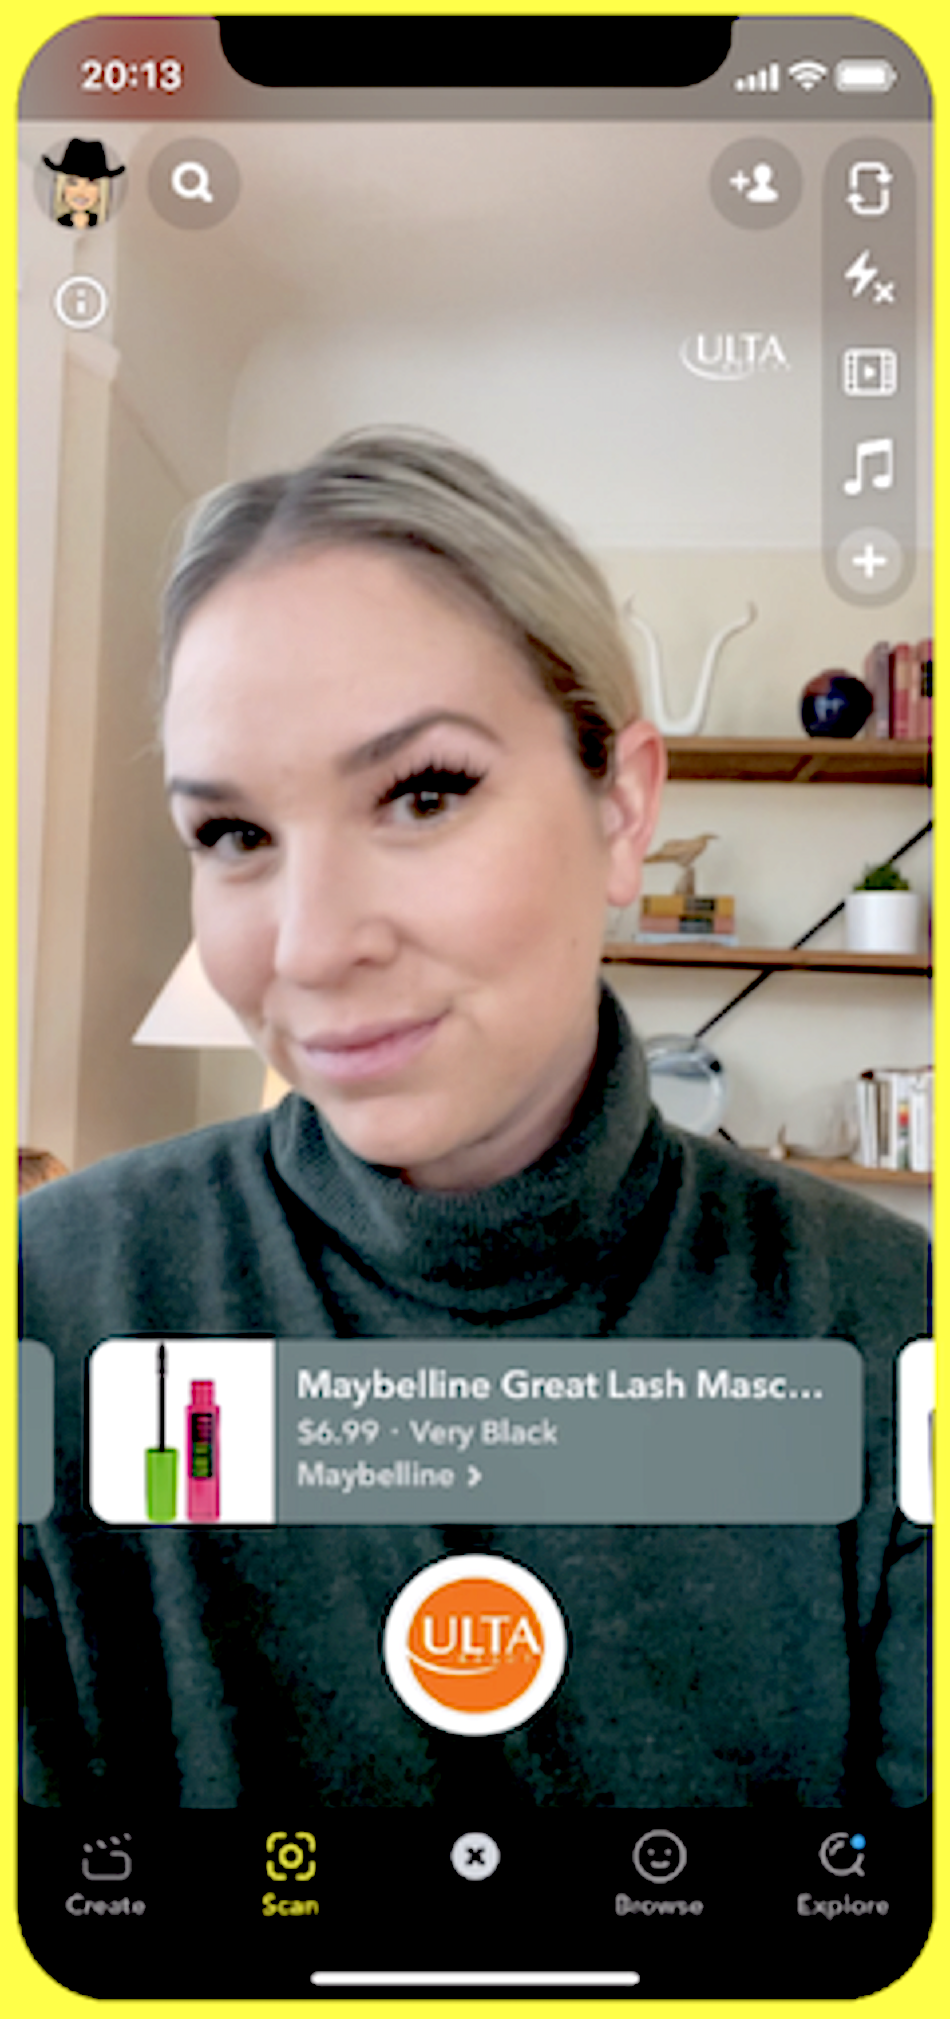 Sur Snapchat, L'Oréal montre une utilisatrice essayant virtuellement du mascara dans une fonctionnalité de réalité augmentée.